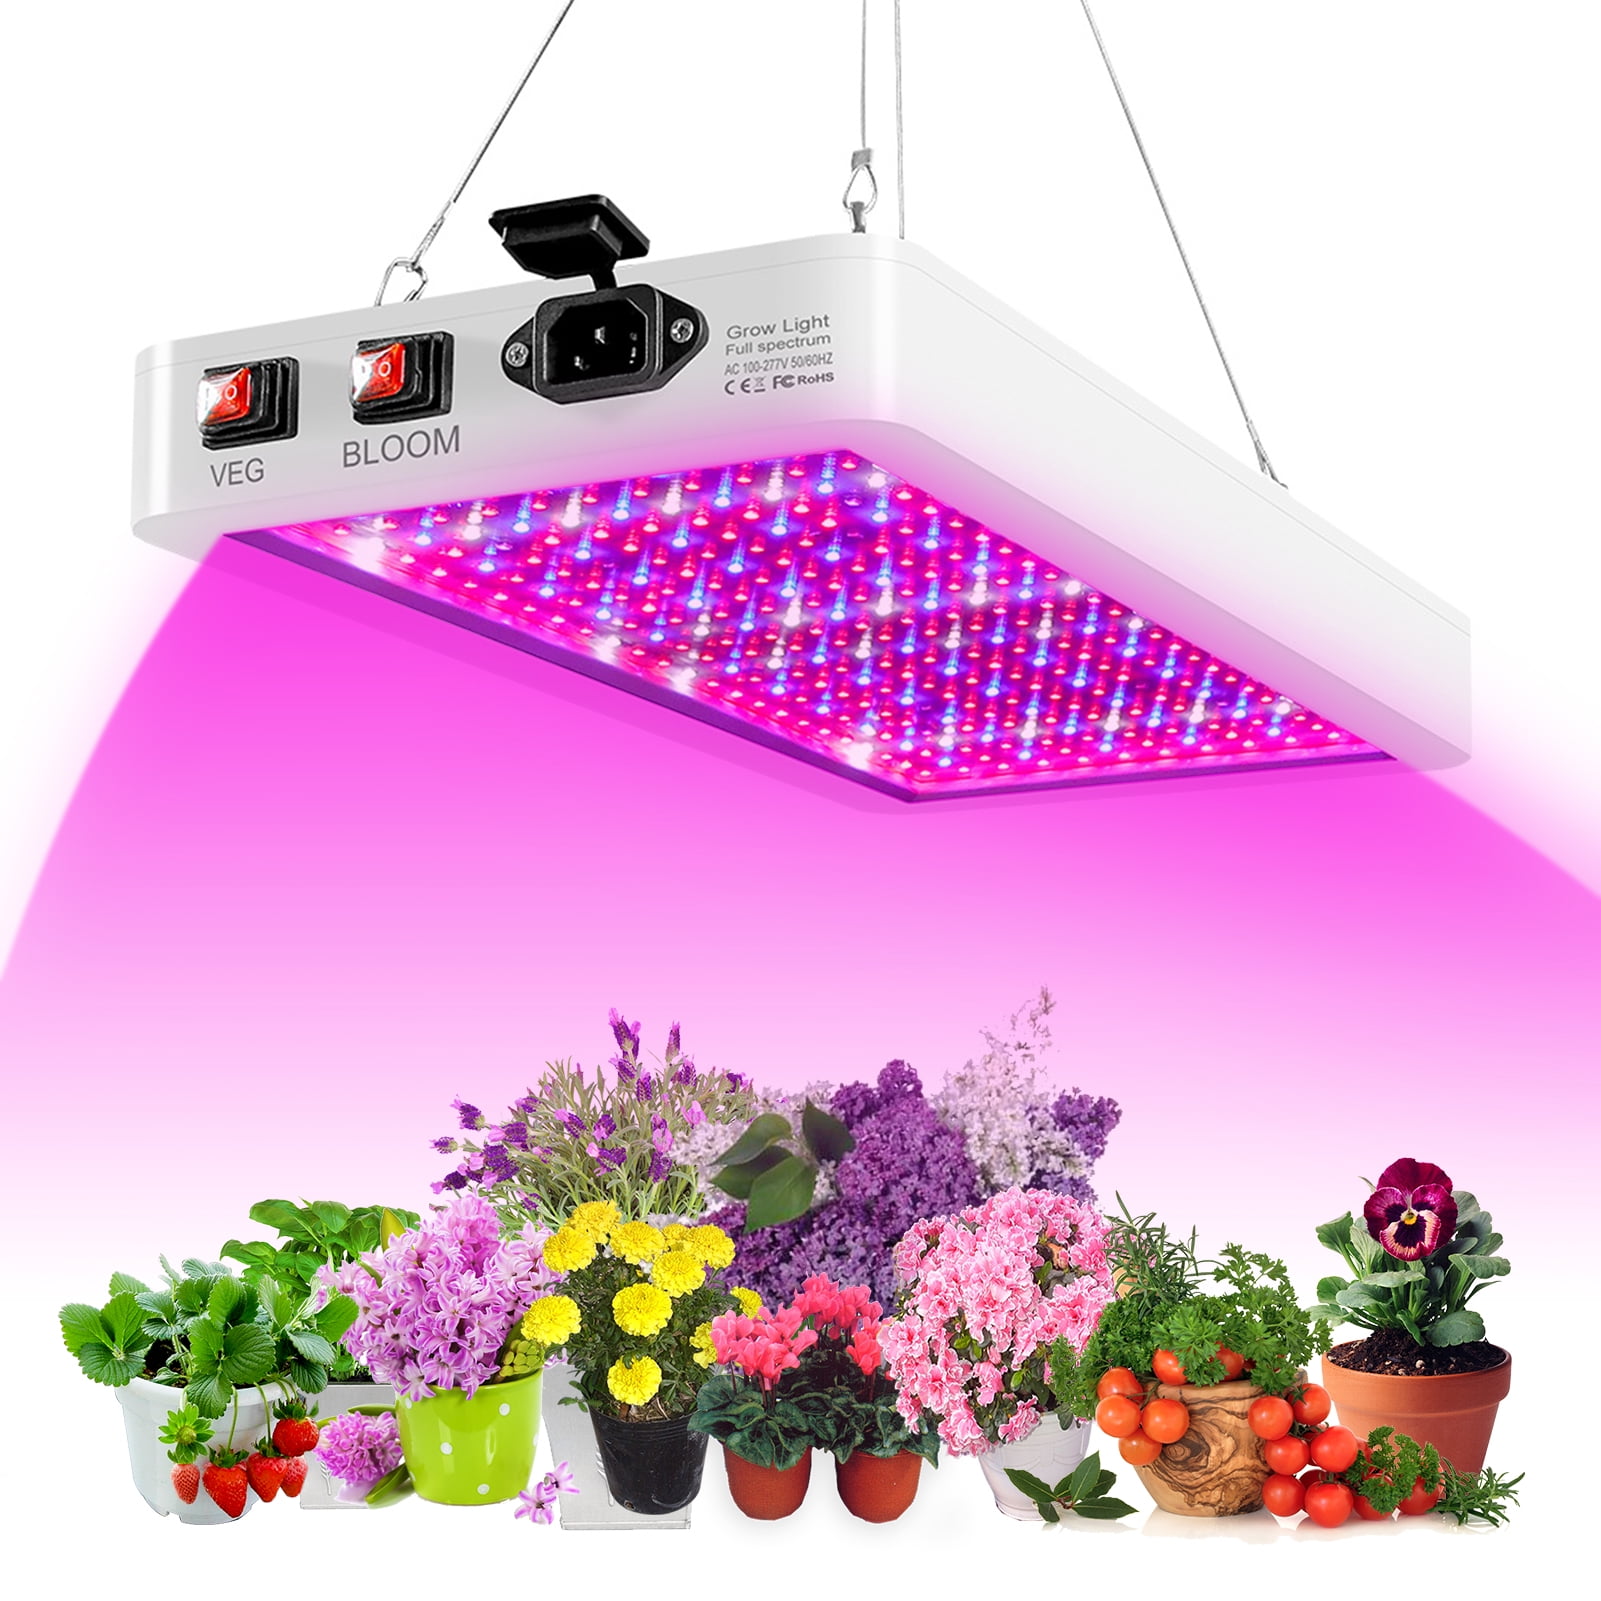 LED Grow Light Strip Waterproof Full Spectrum Lamp for Indoor Plant Veg Flowers 